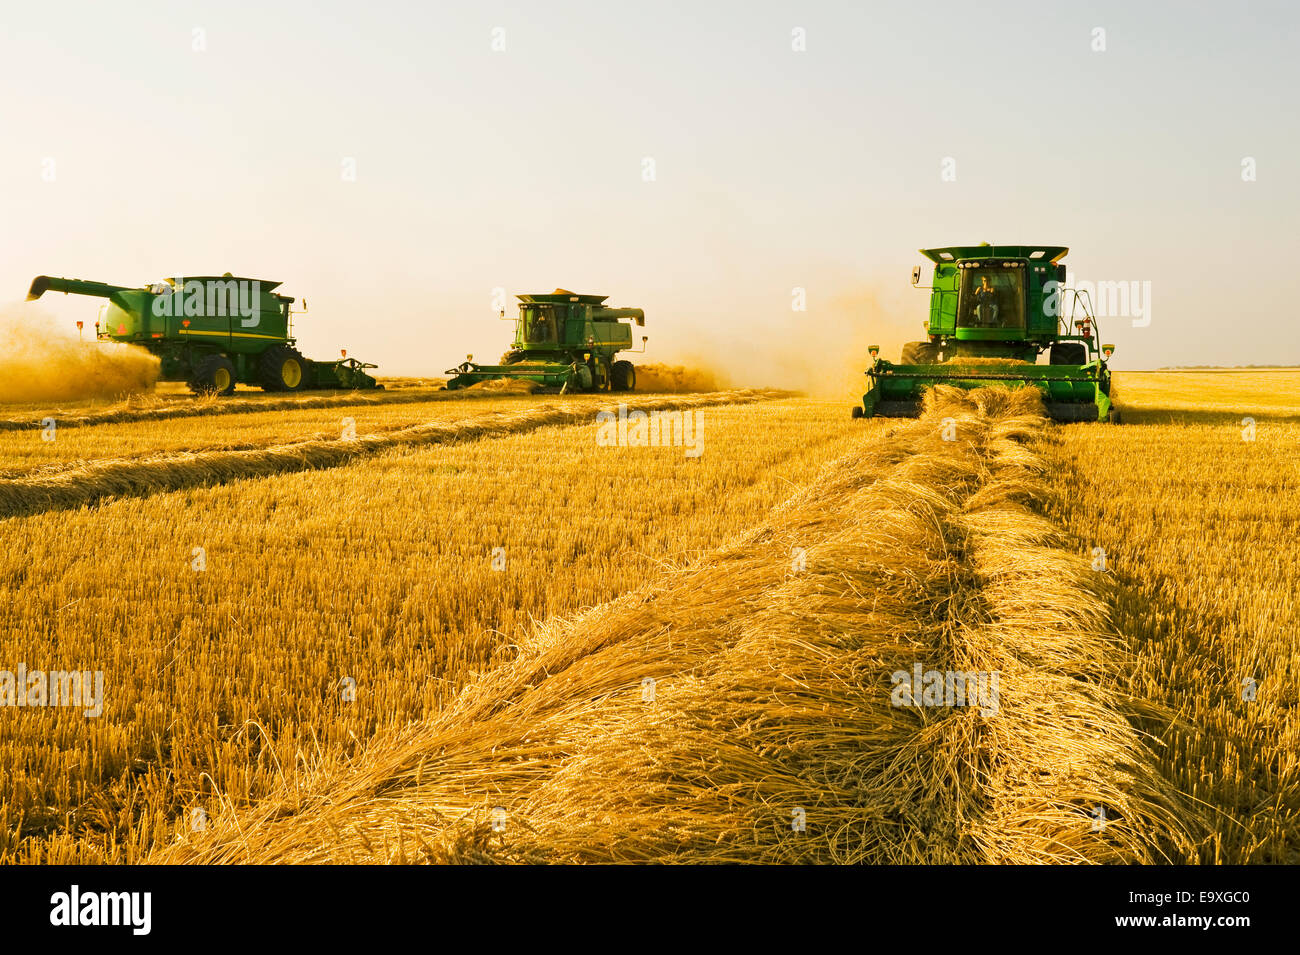 Landwirtschaft - drei John Deere Mähdrescher Ernte gehüllt Sommerweizen im Frühherbst / in der Nähe von Somerset, Manitoba, Kanada. Stockfoto